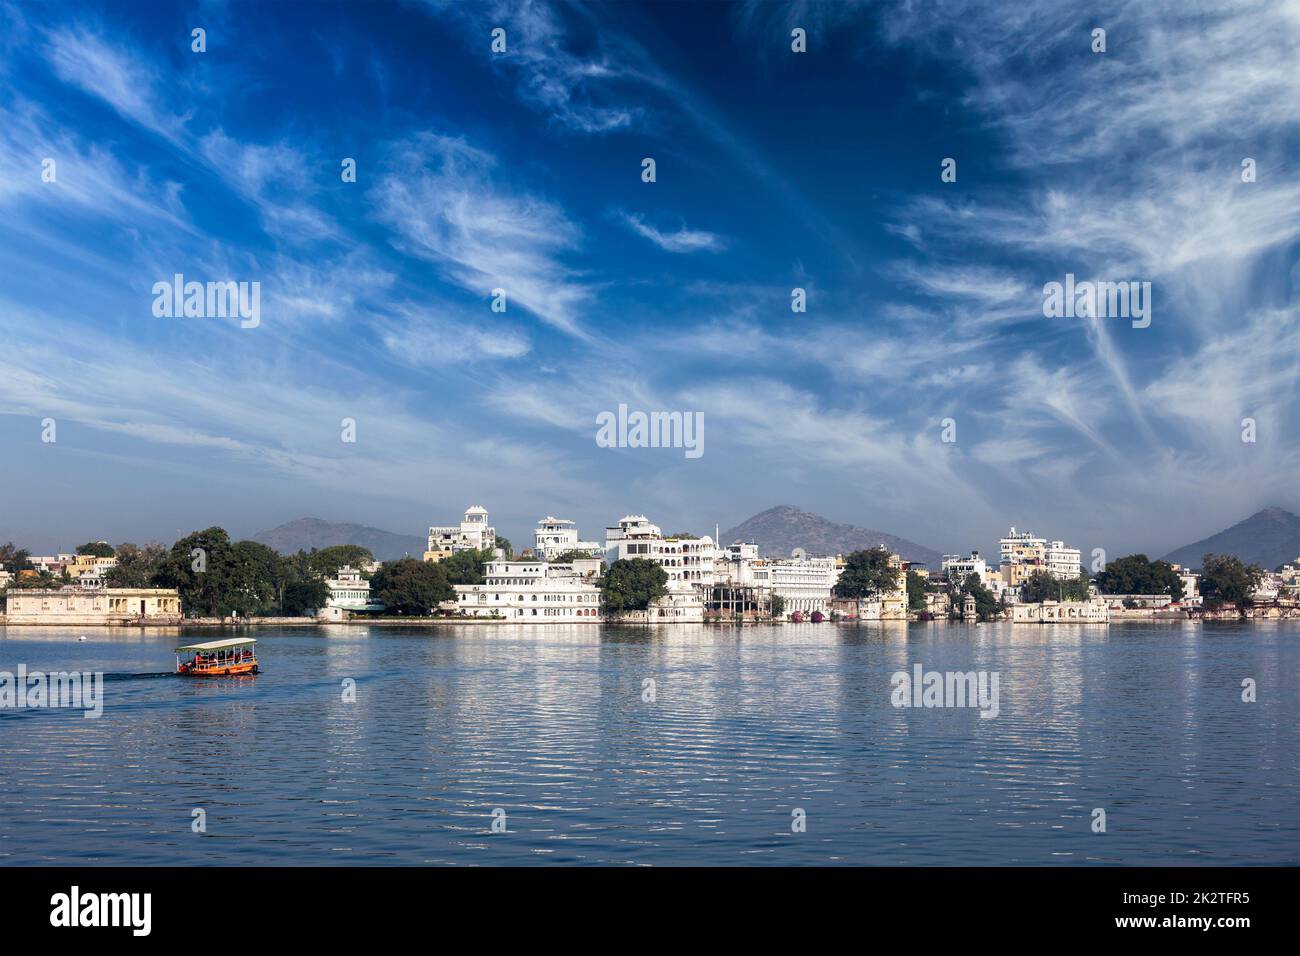 Le lac Pichola, Udaipur avec bateau de tourisme, Rajasthan, Inde Banque D'Images